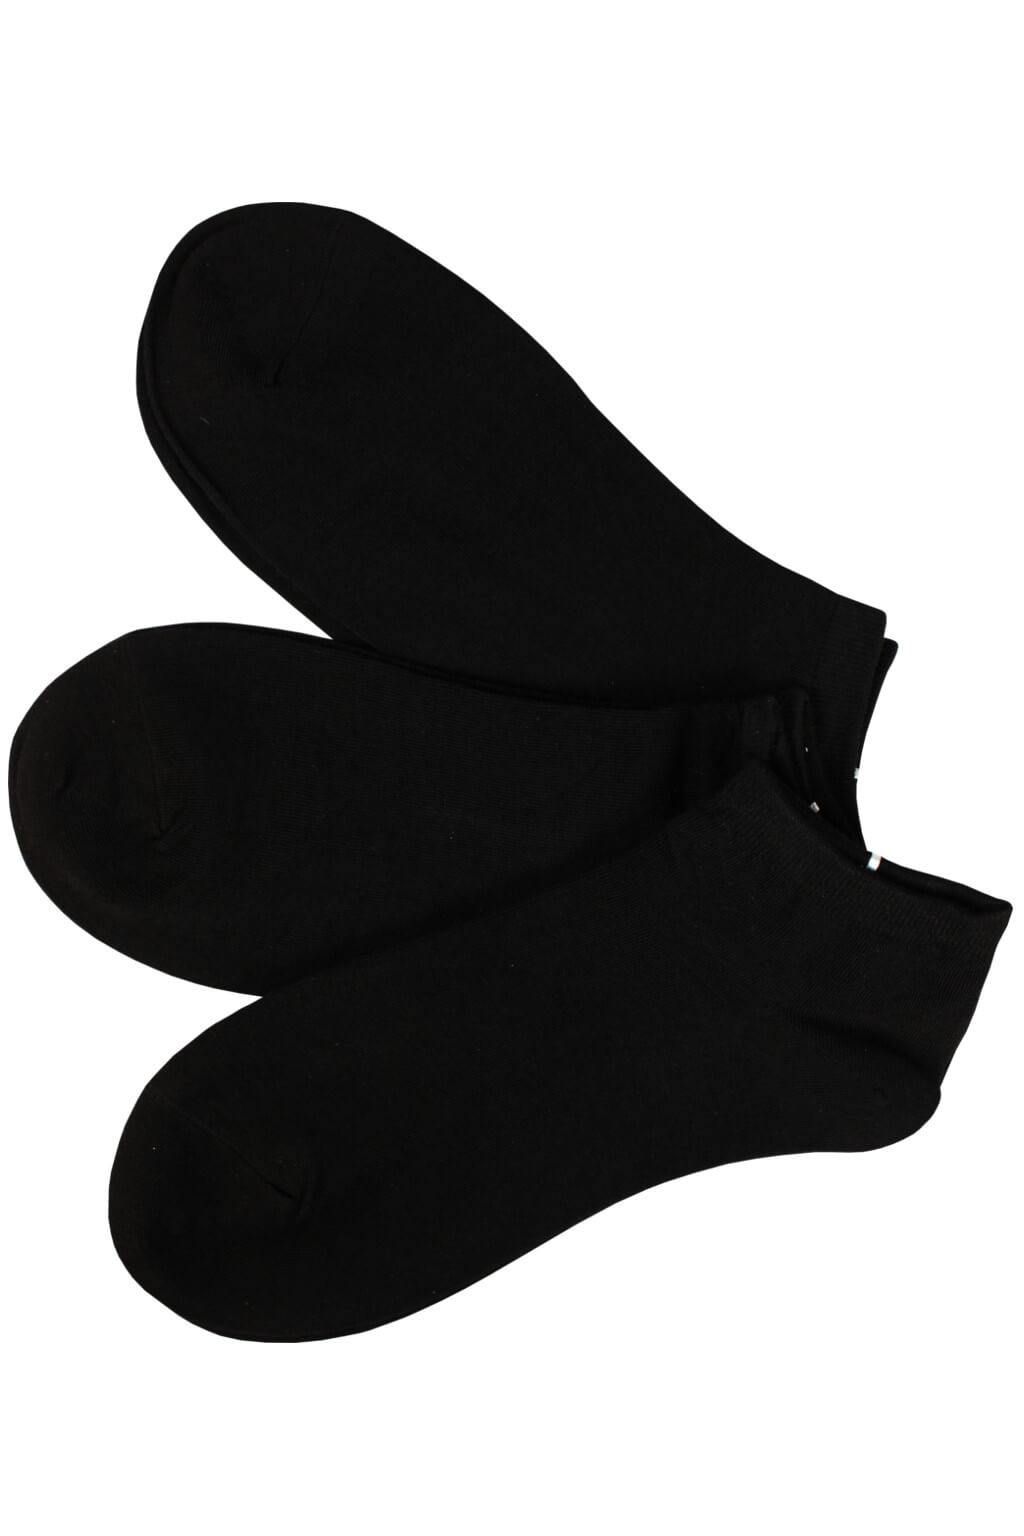 Bamboo Black dámské kotníčkové ponožky XW2601 - 3páry 35-38 černá